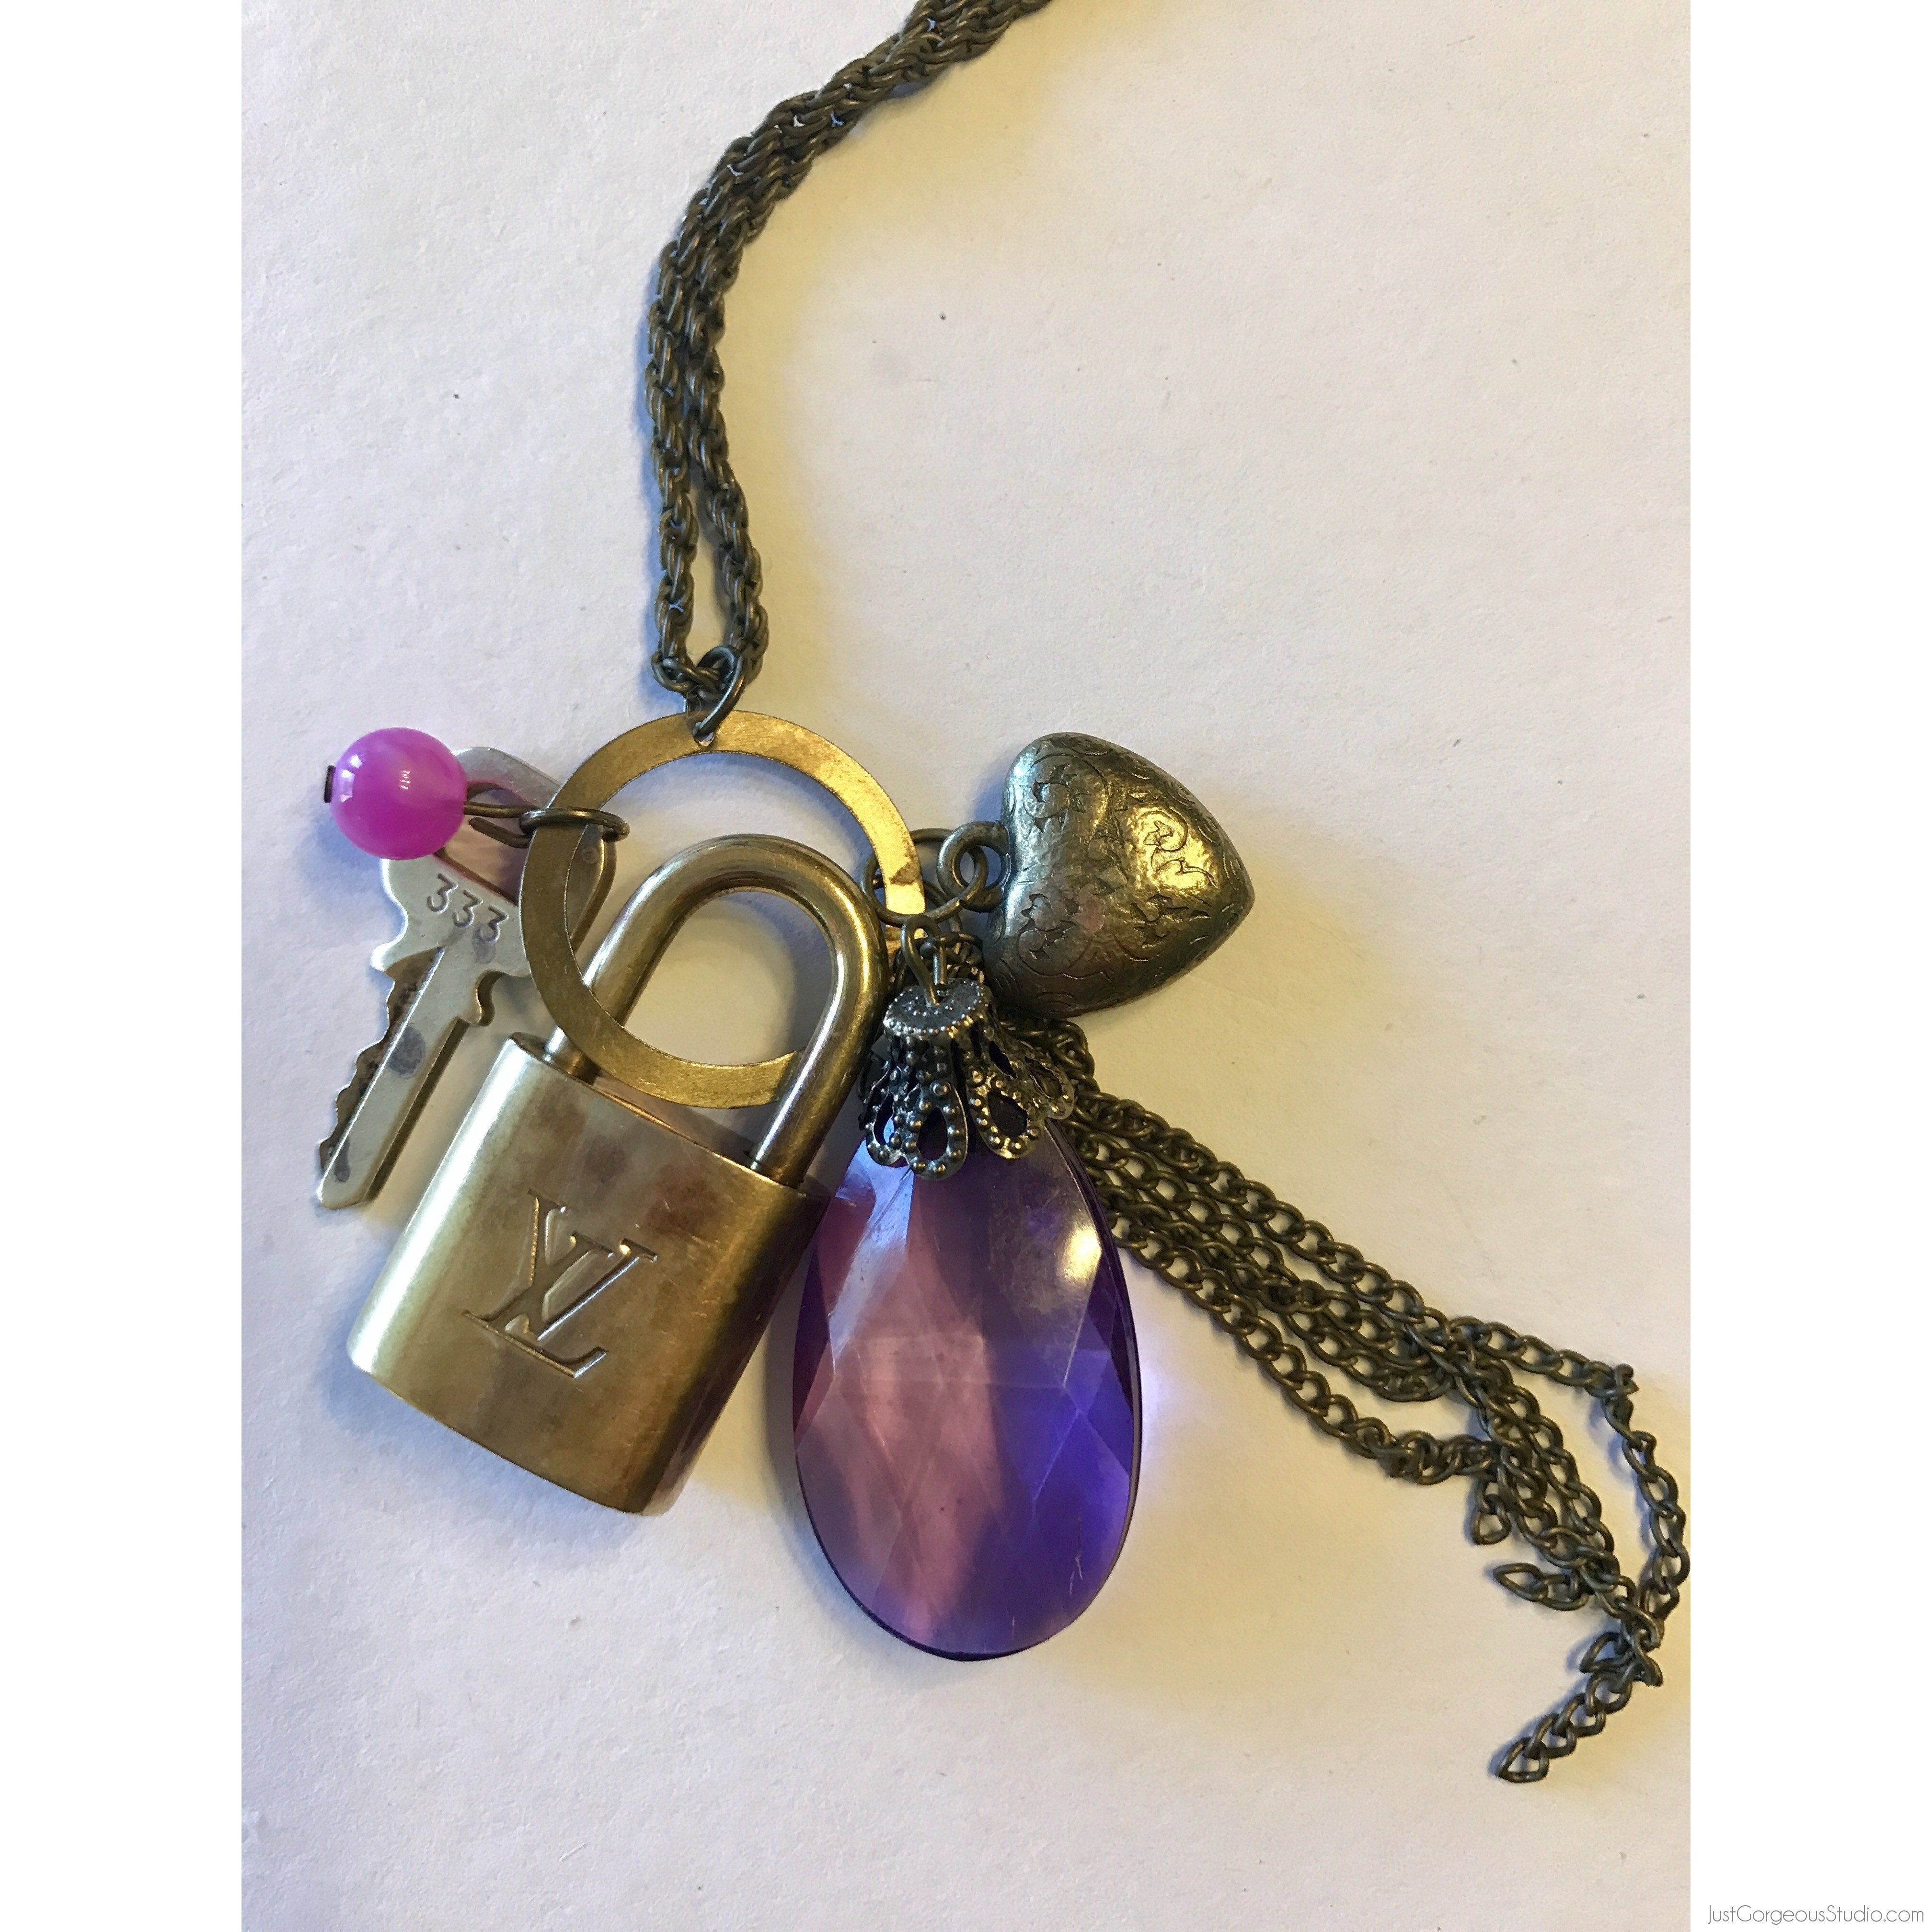 Louis Vuitton key necklace